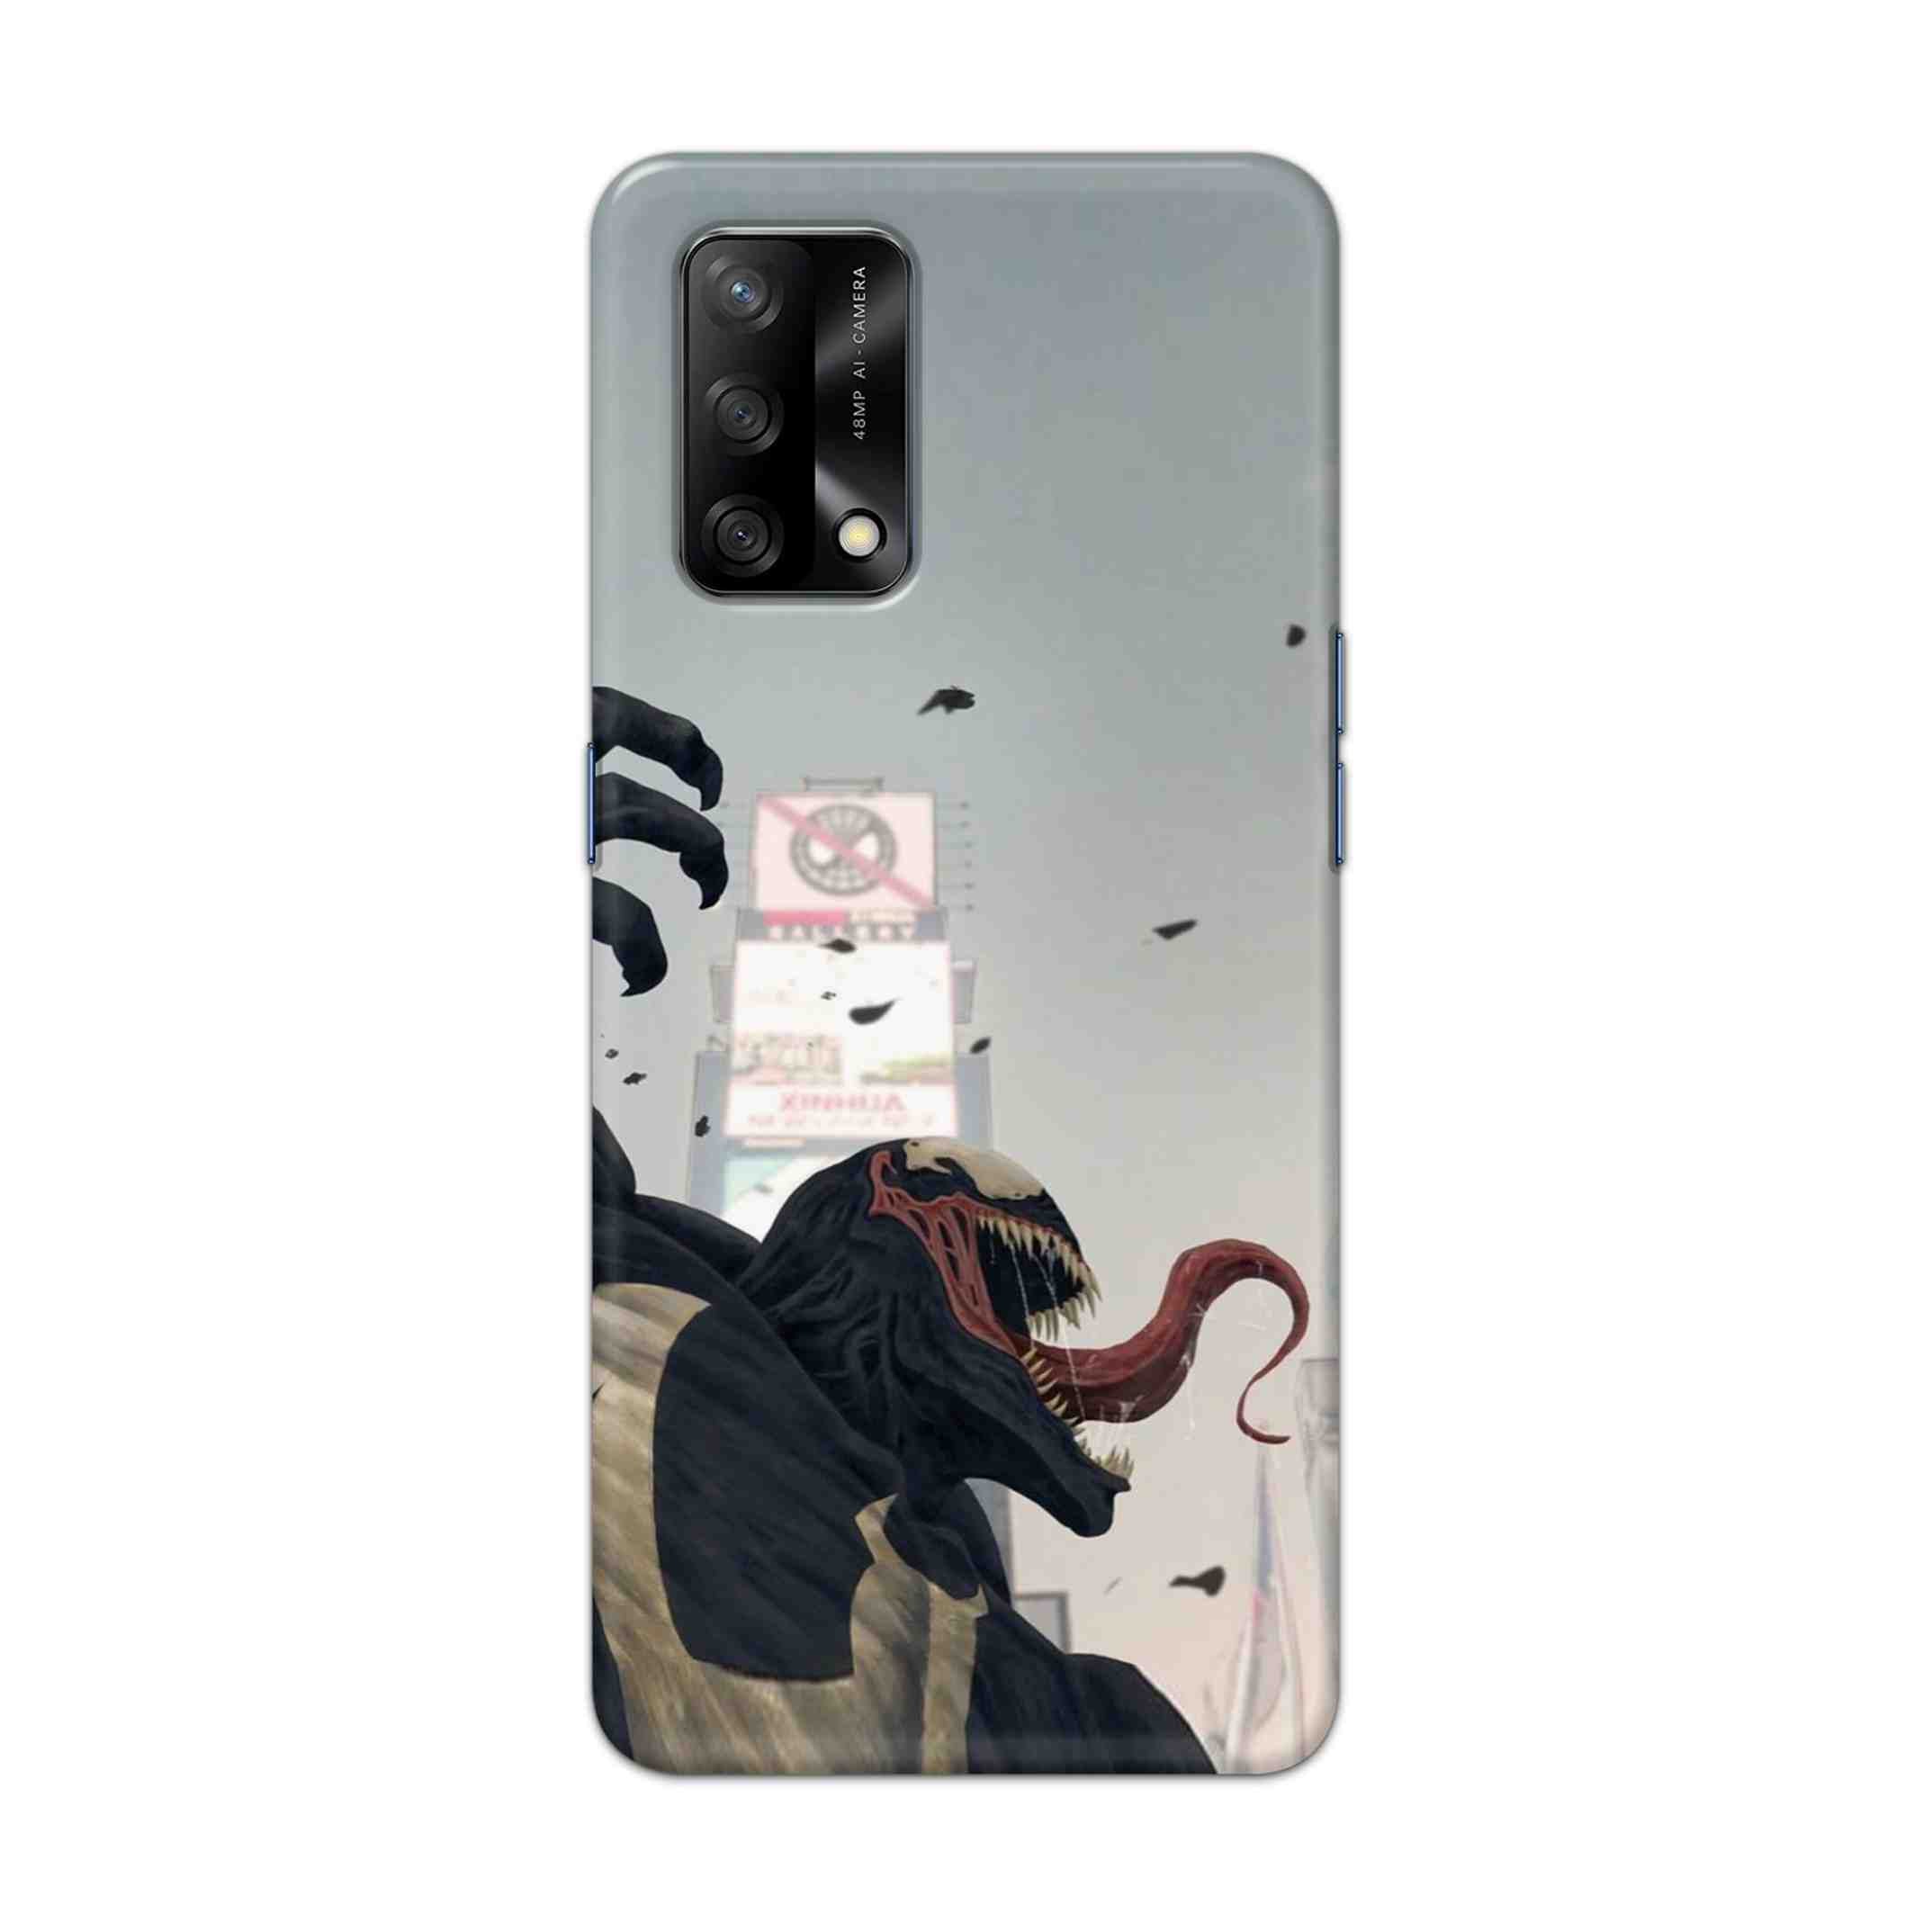 Buy Venom Crunch Hard Back Mobile Phone Case Cover For Oppo F19 Online